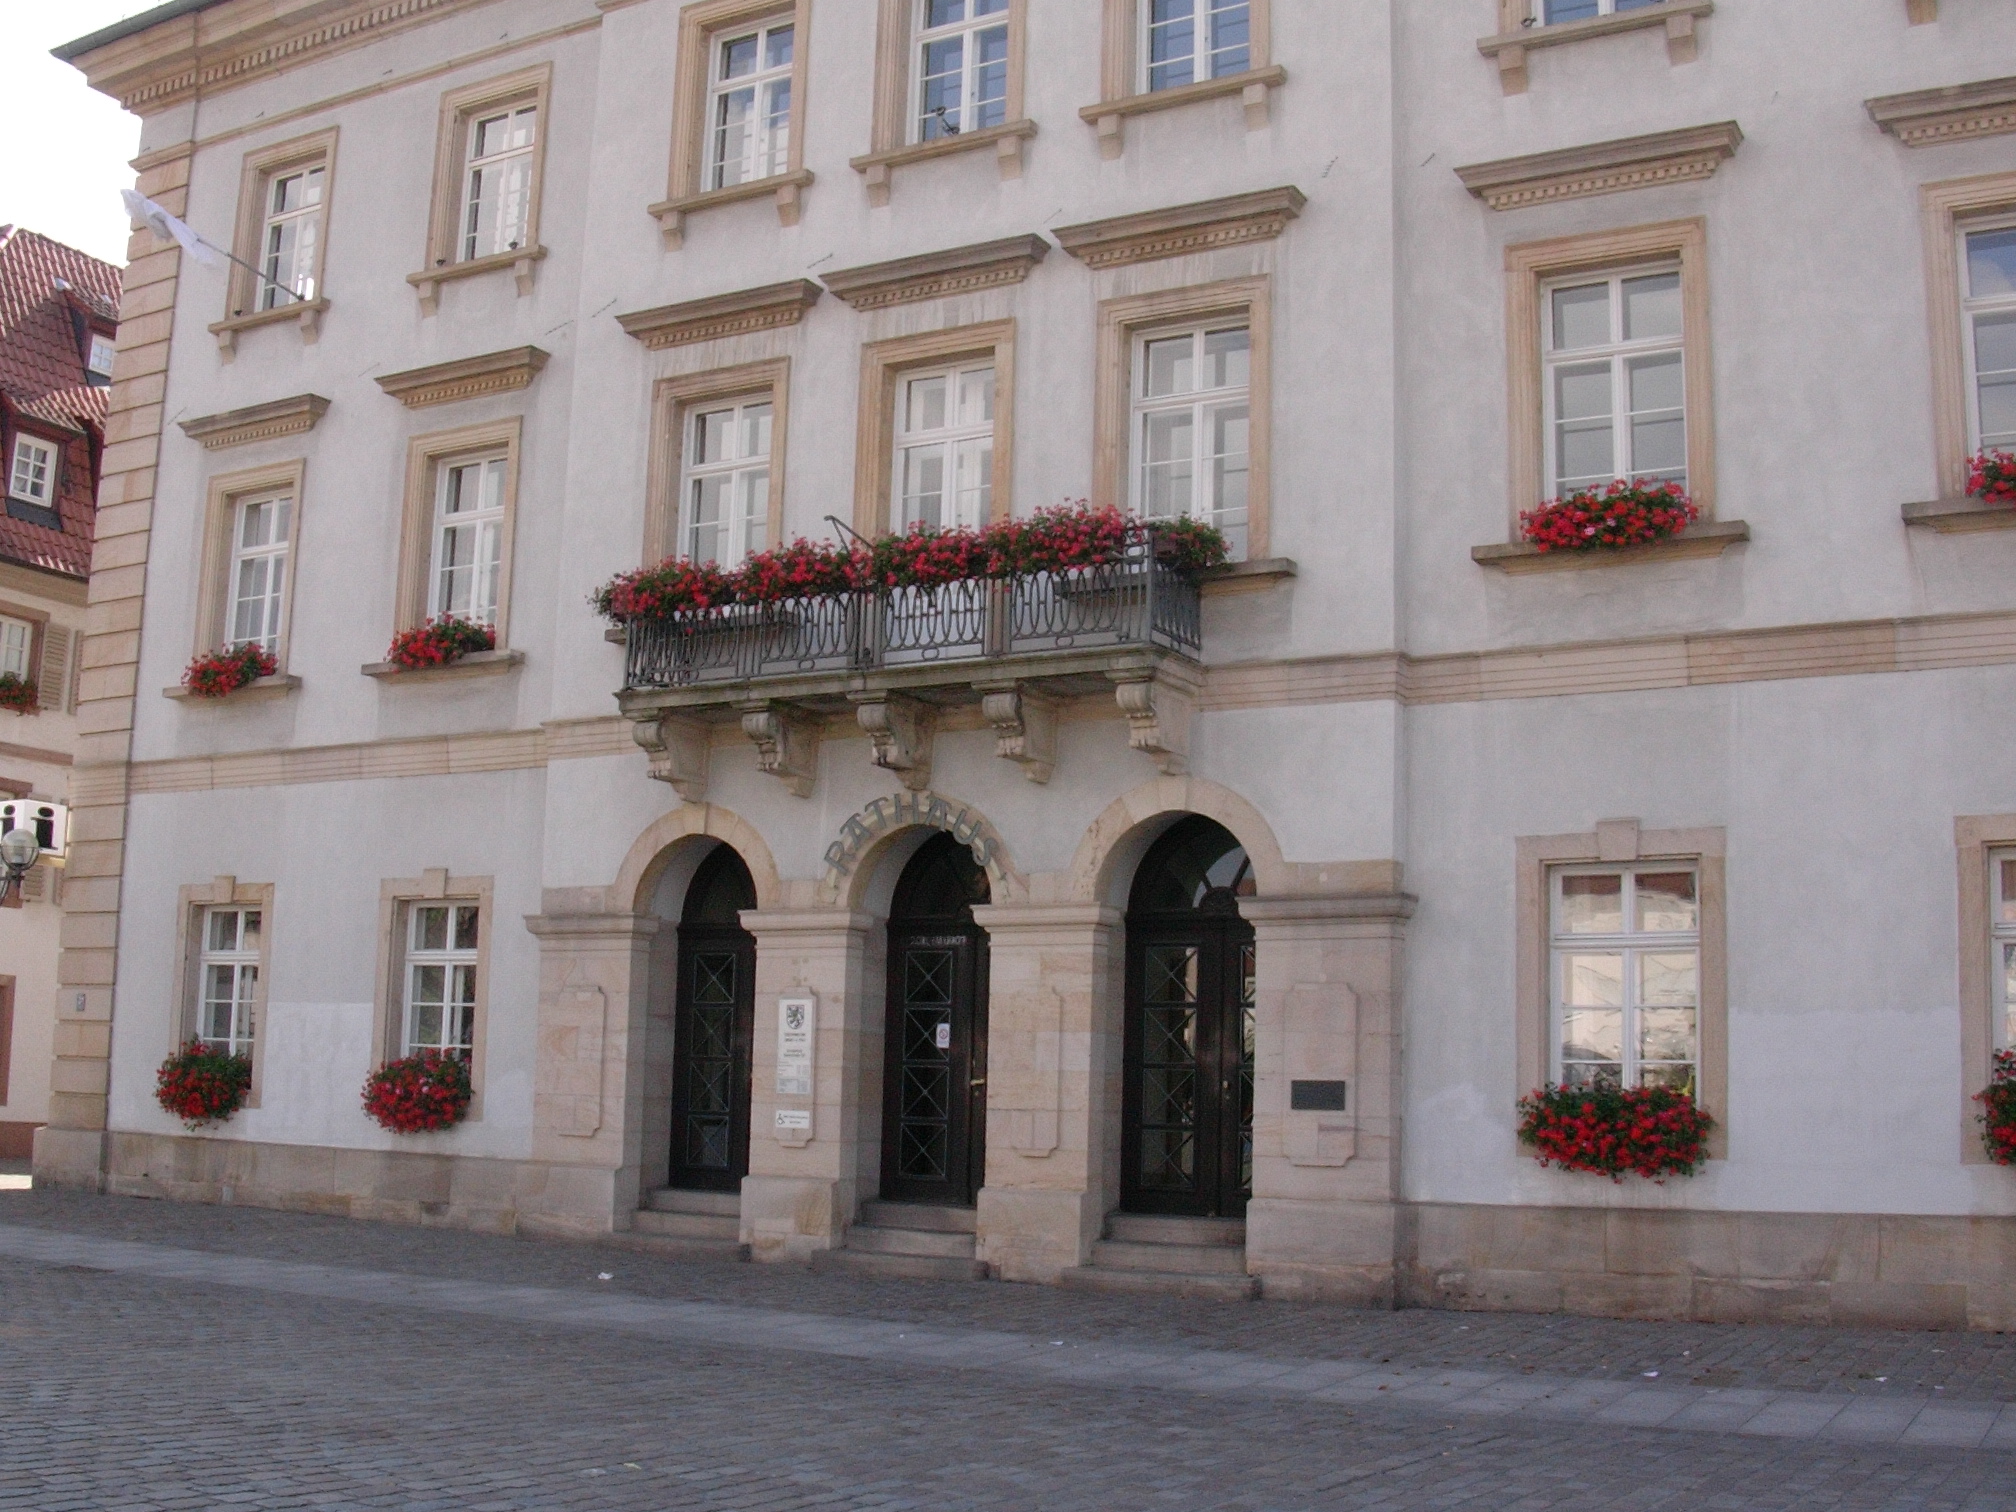 Datei:Rathaus Landau.jpg